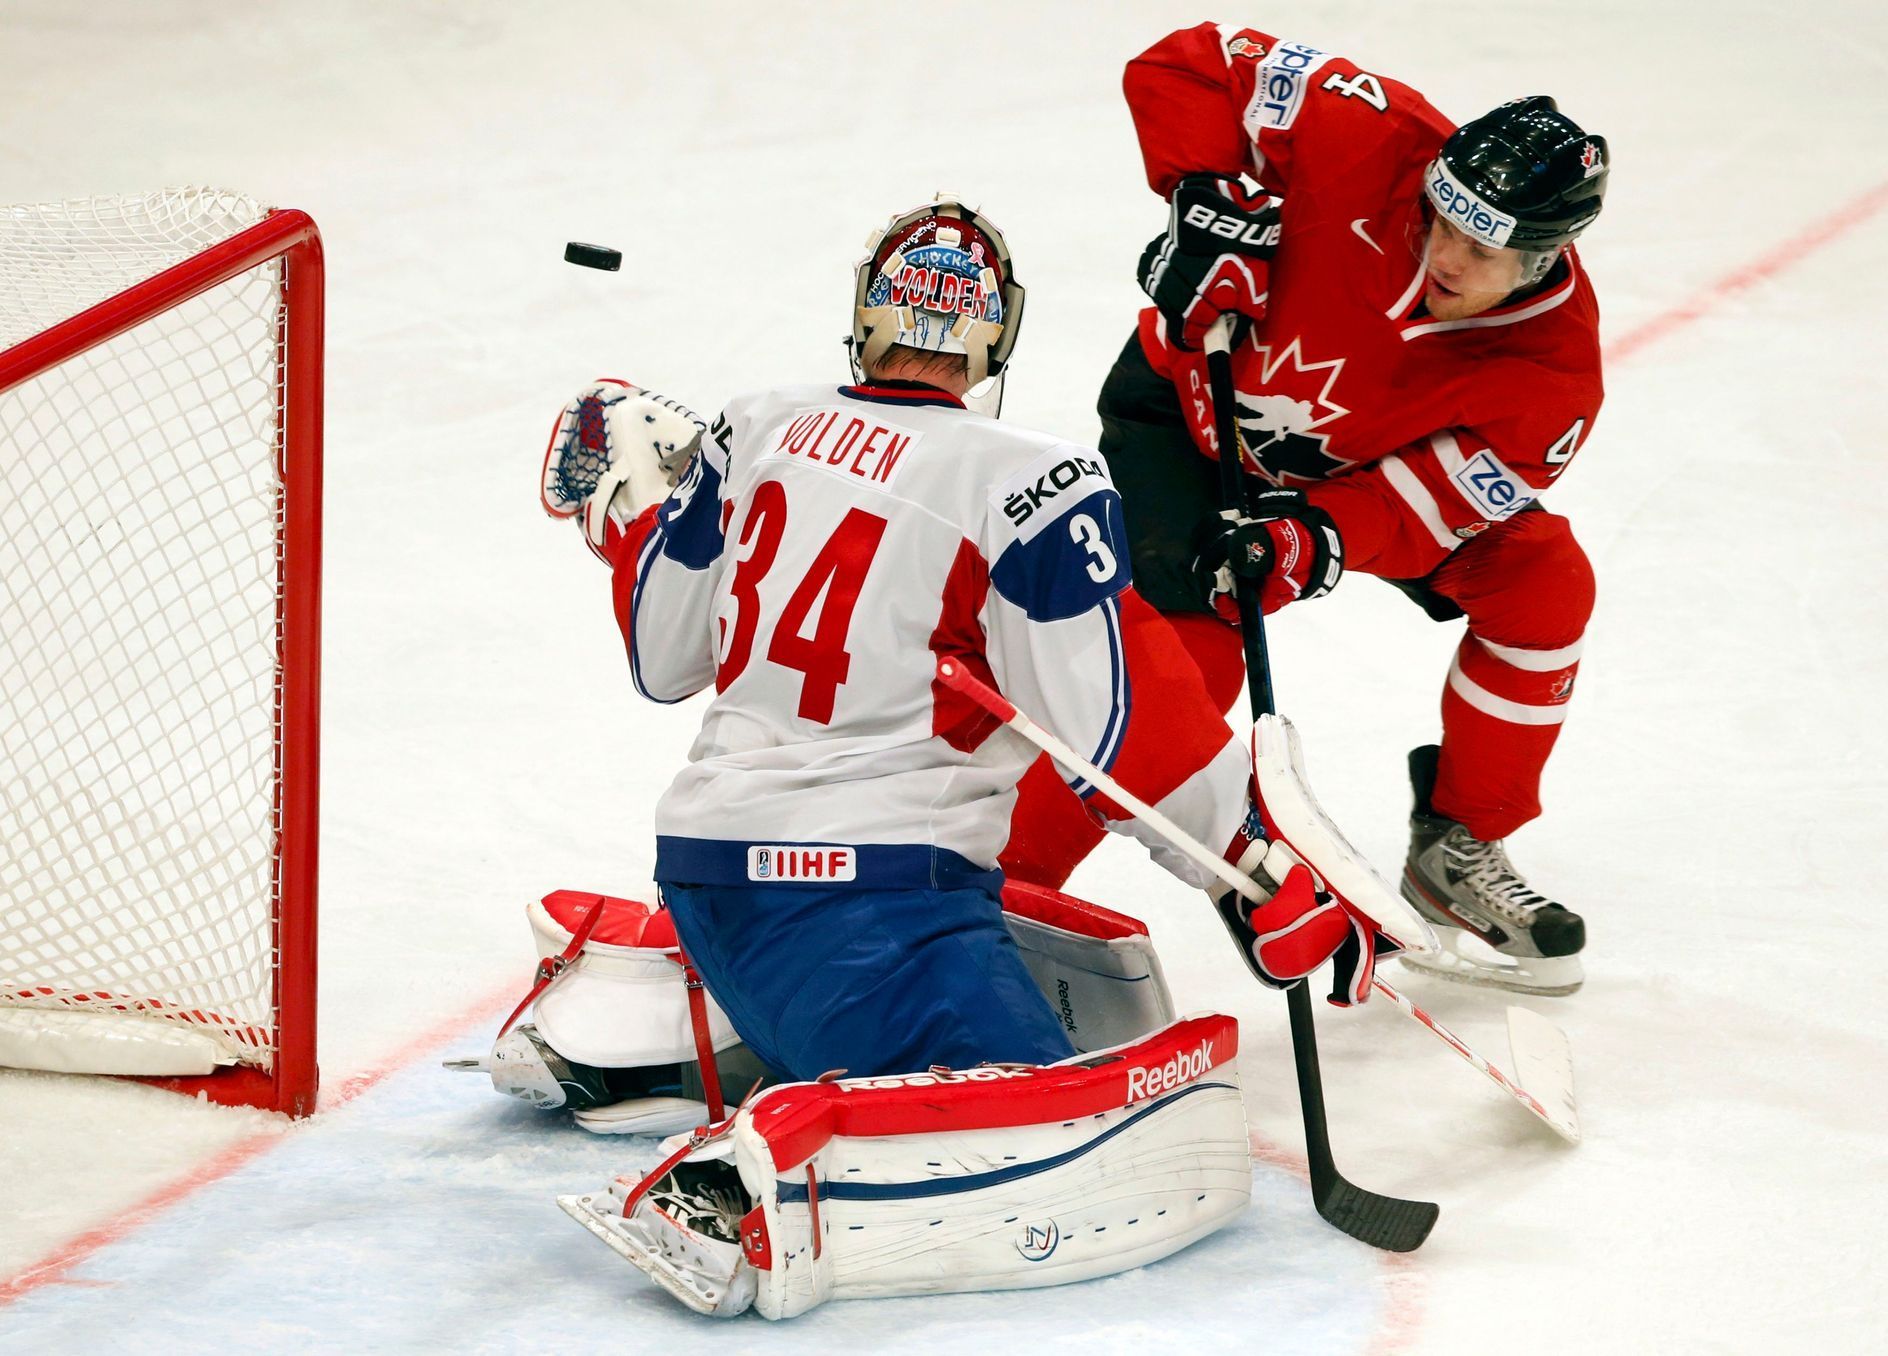 MS v hokeji 2013: Kanada - Norsko (Volden, Taylor)